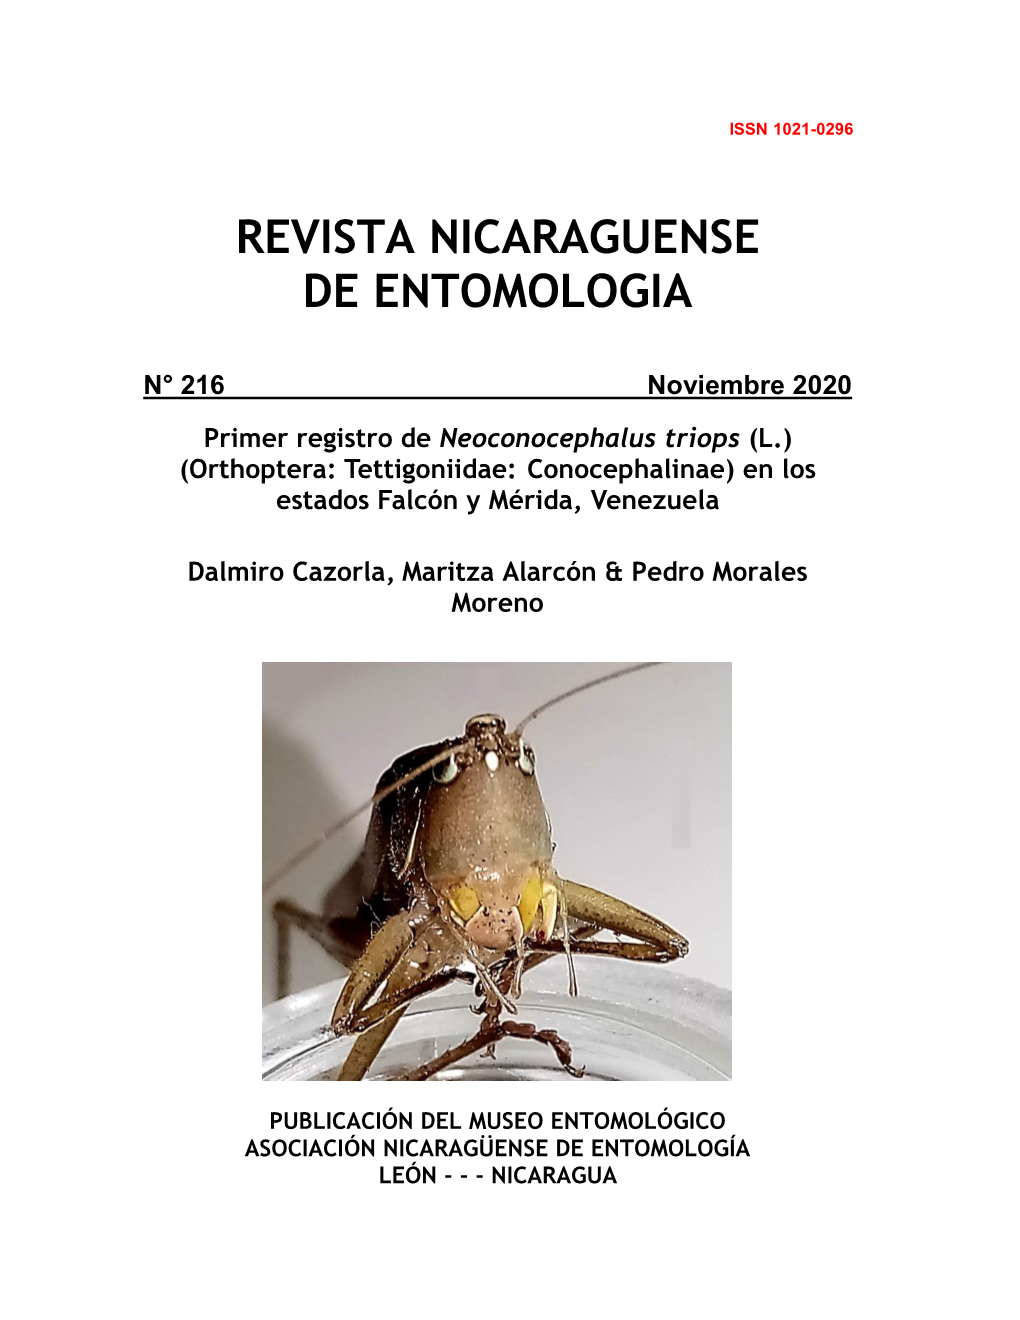 Primer Registro De Neoconocephalus Triops (L.) (Orthoptera: Tettigoniidae: Conocephalinae) En Los Estados Falcón Y Mérida, Venezuela